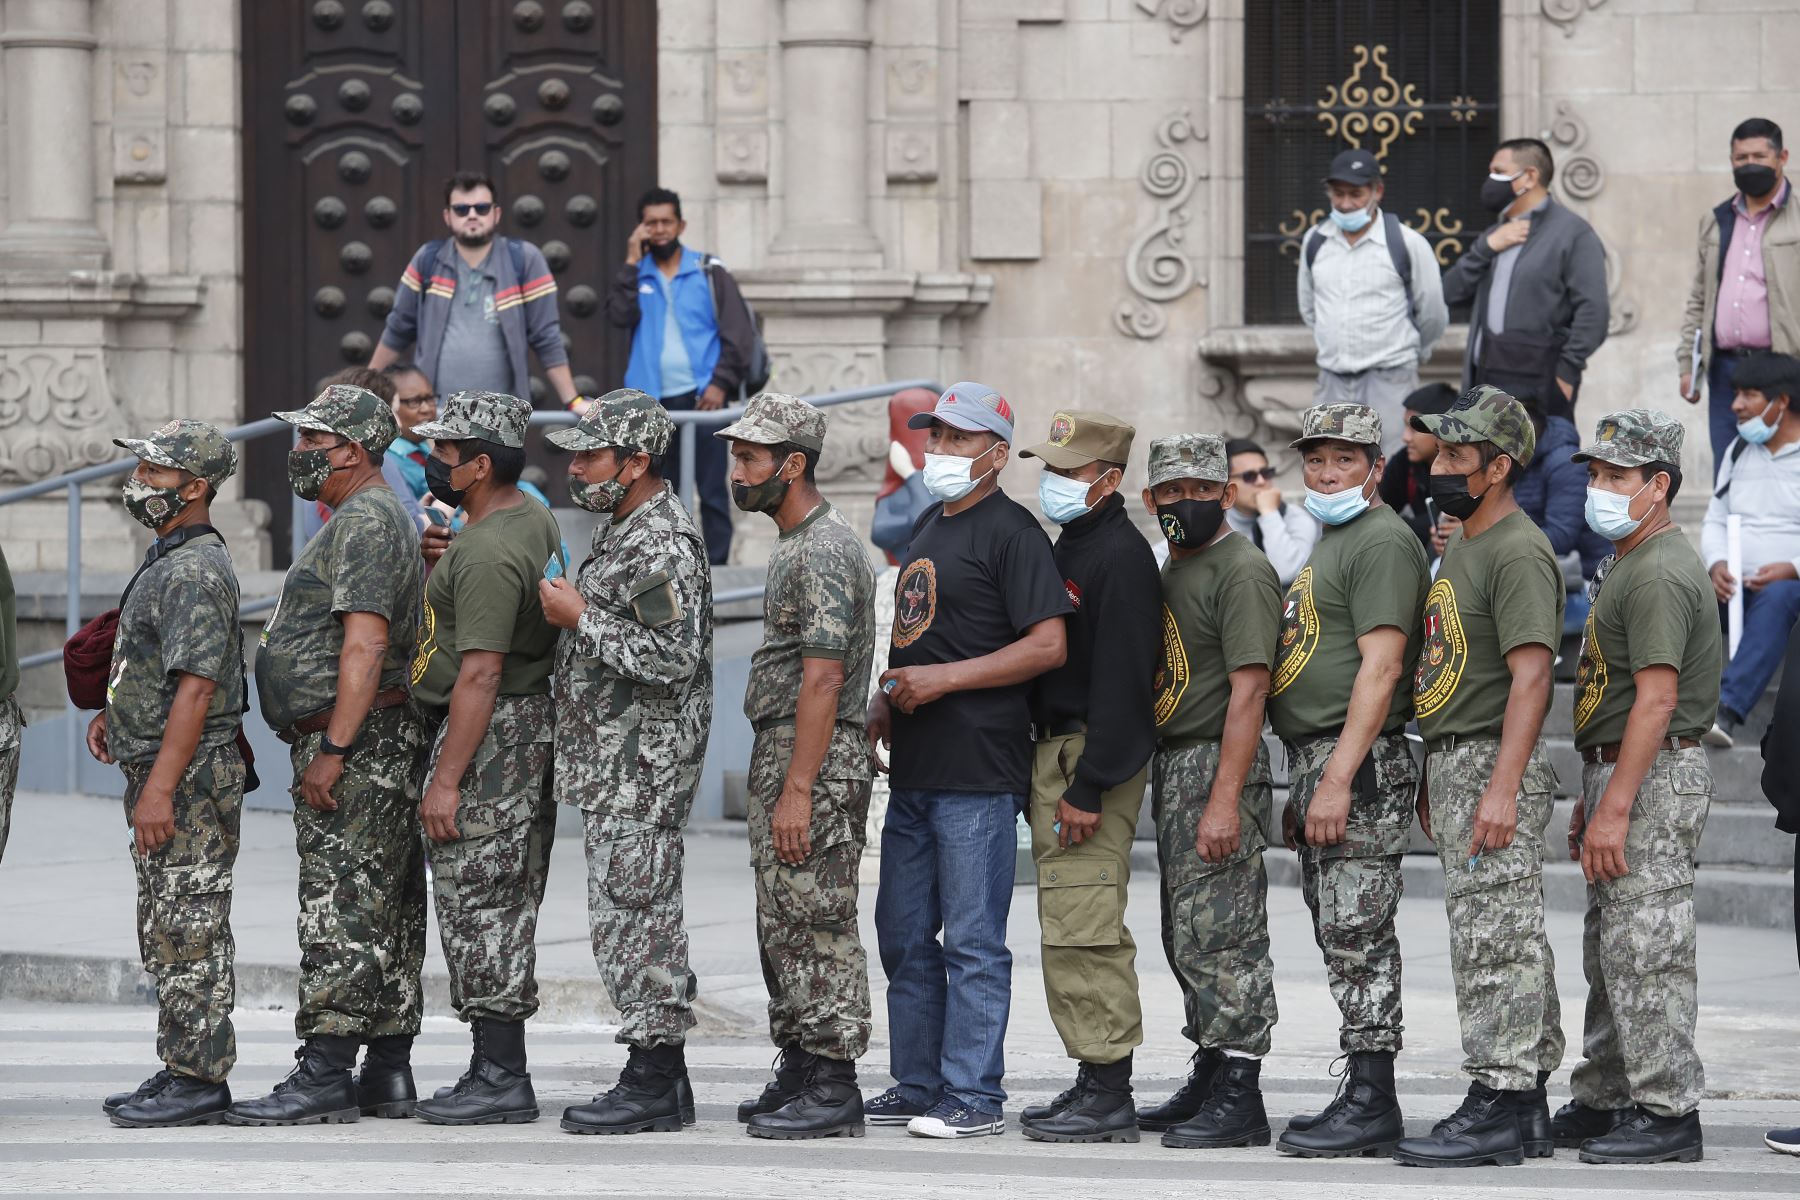 Reservistas llegan a la Plaza Armas e ingresan a Palacio de Gobierno para solicitar sus demandas.
Foto: ANDINA/ Renato Pajuelo